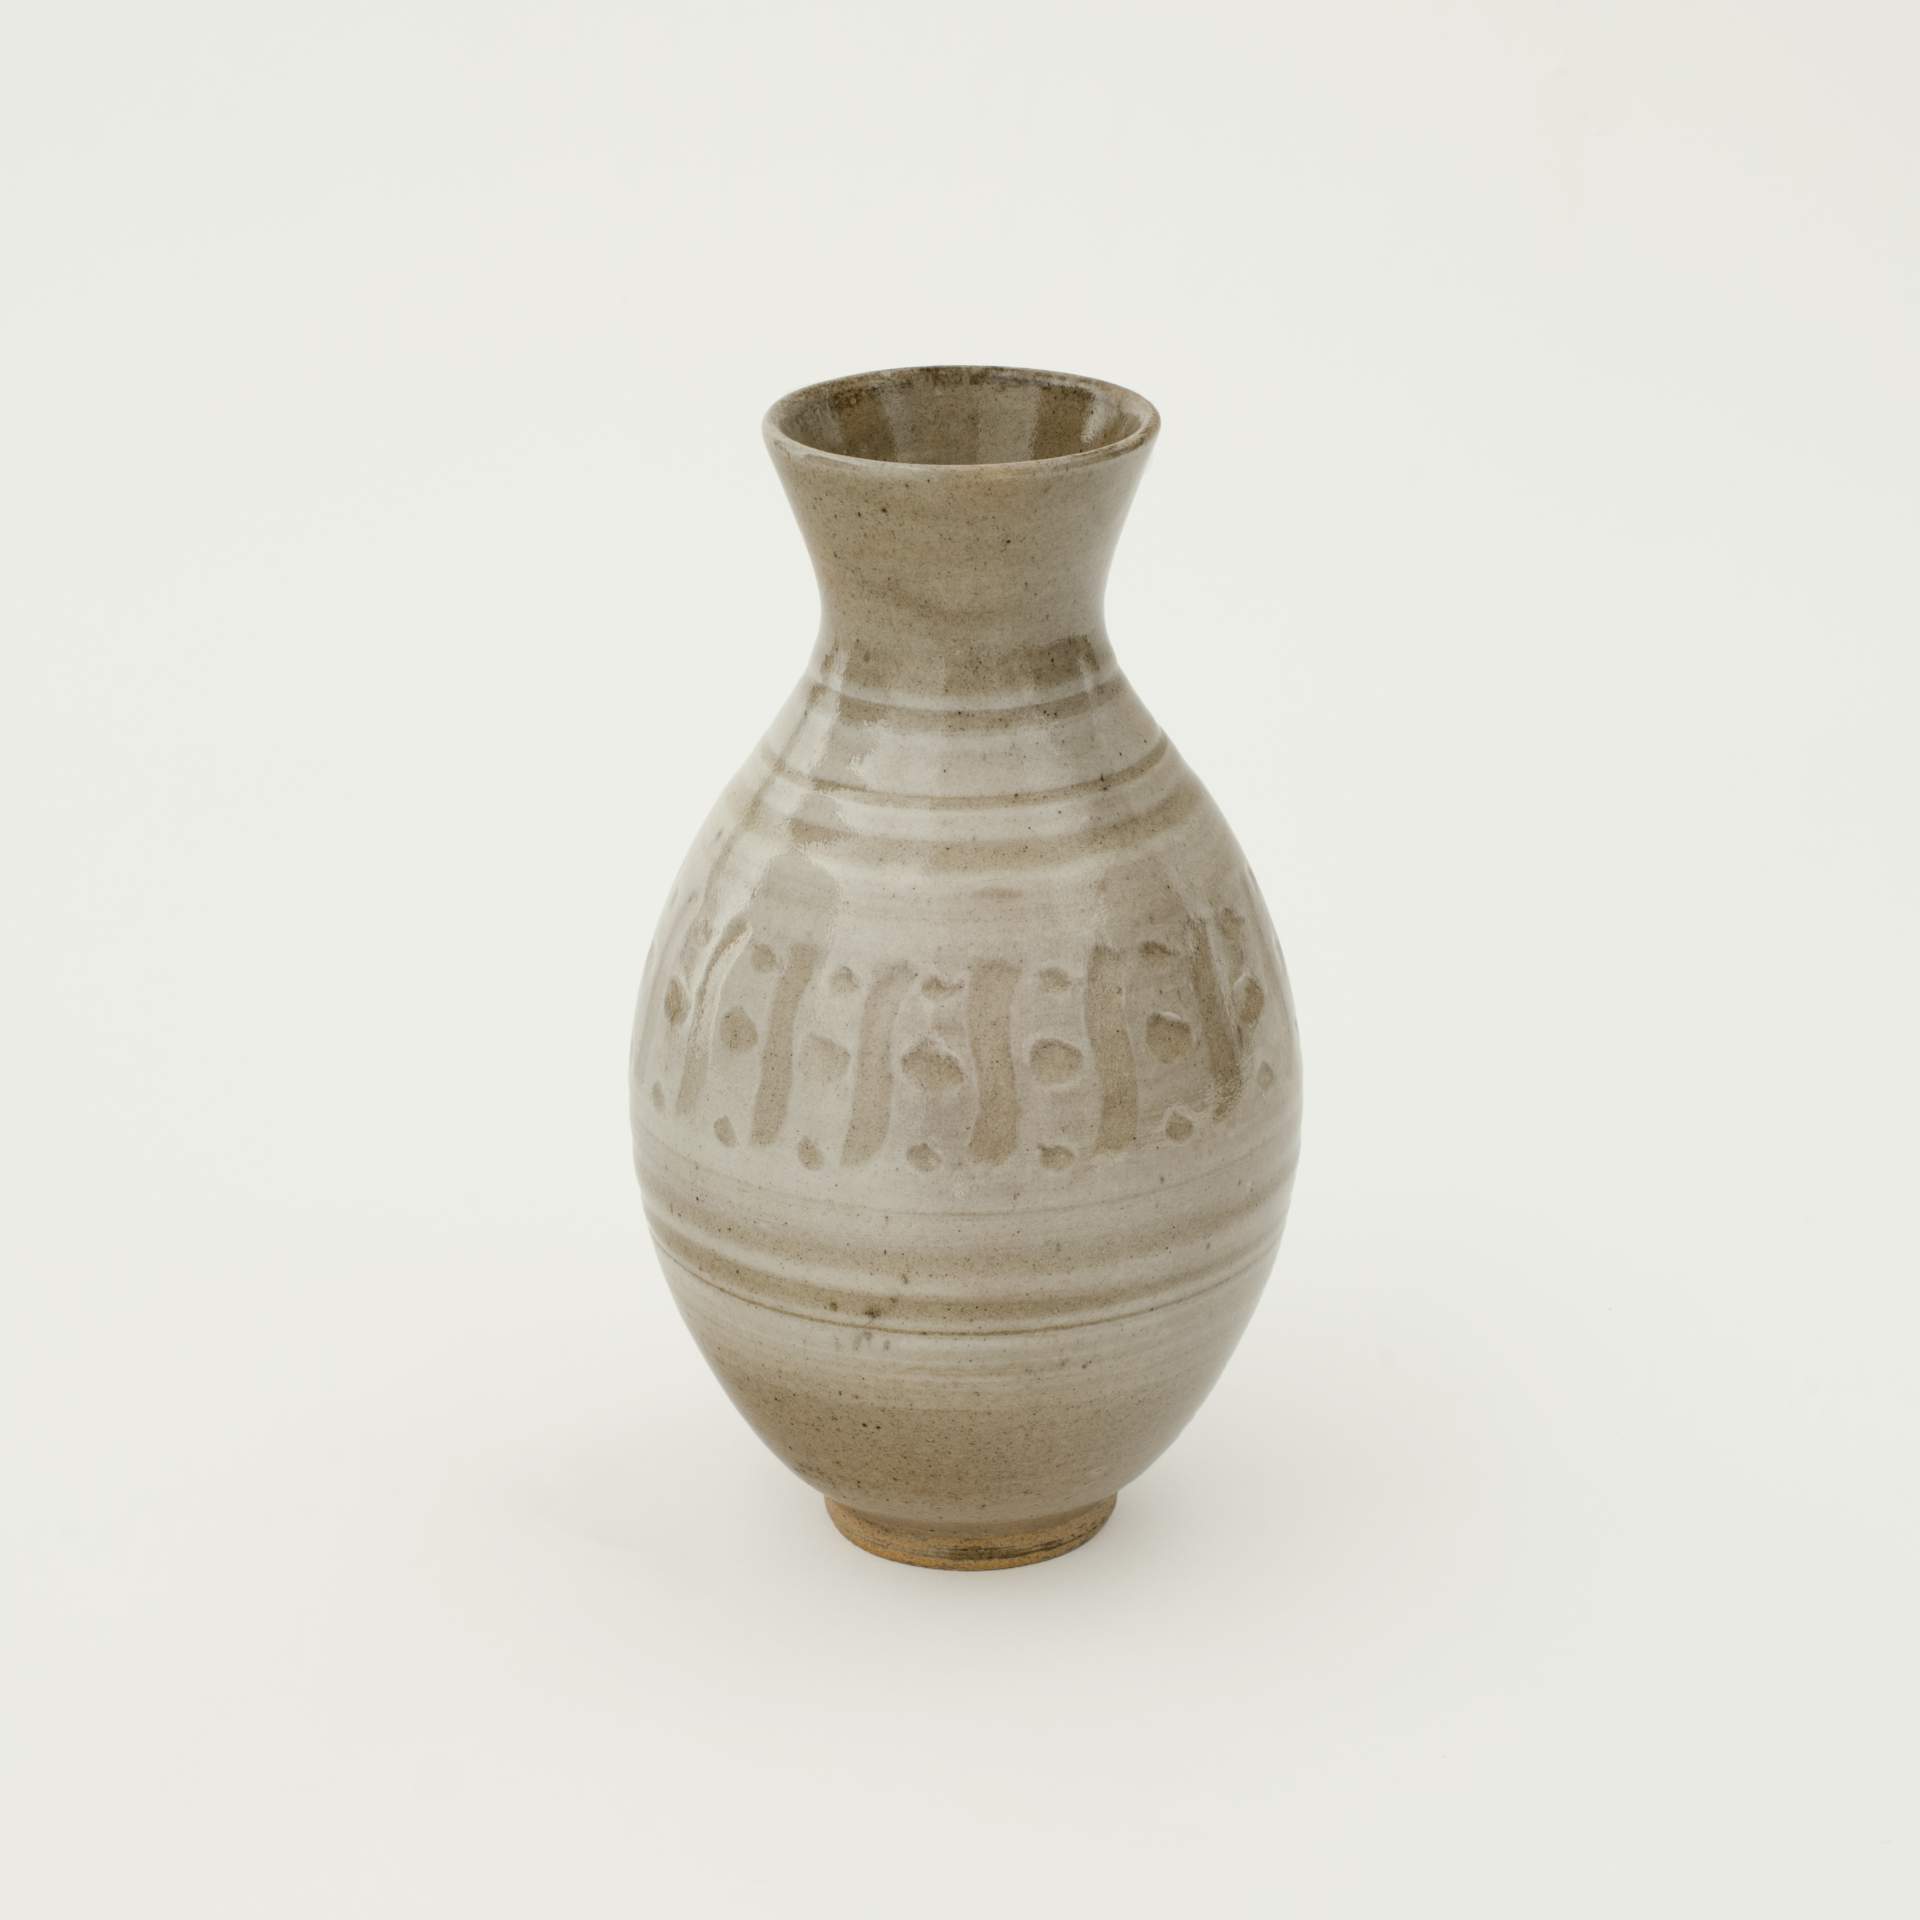 Tan glazed ceramic vase